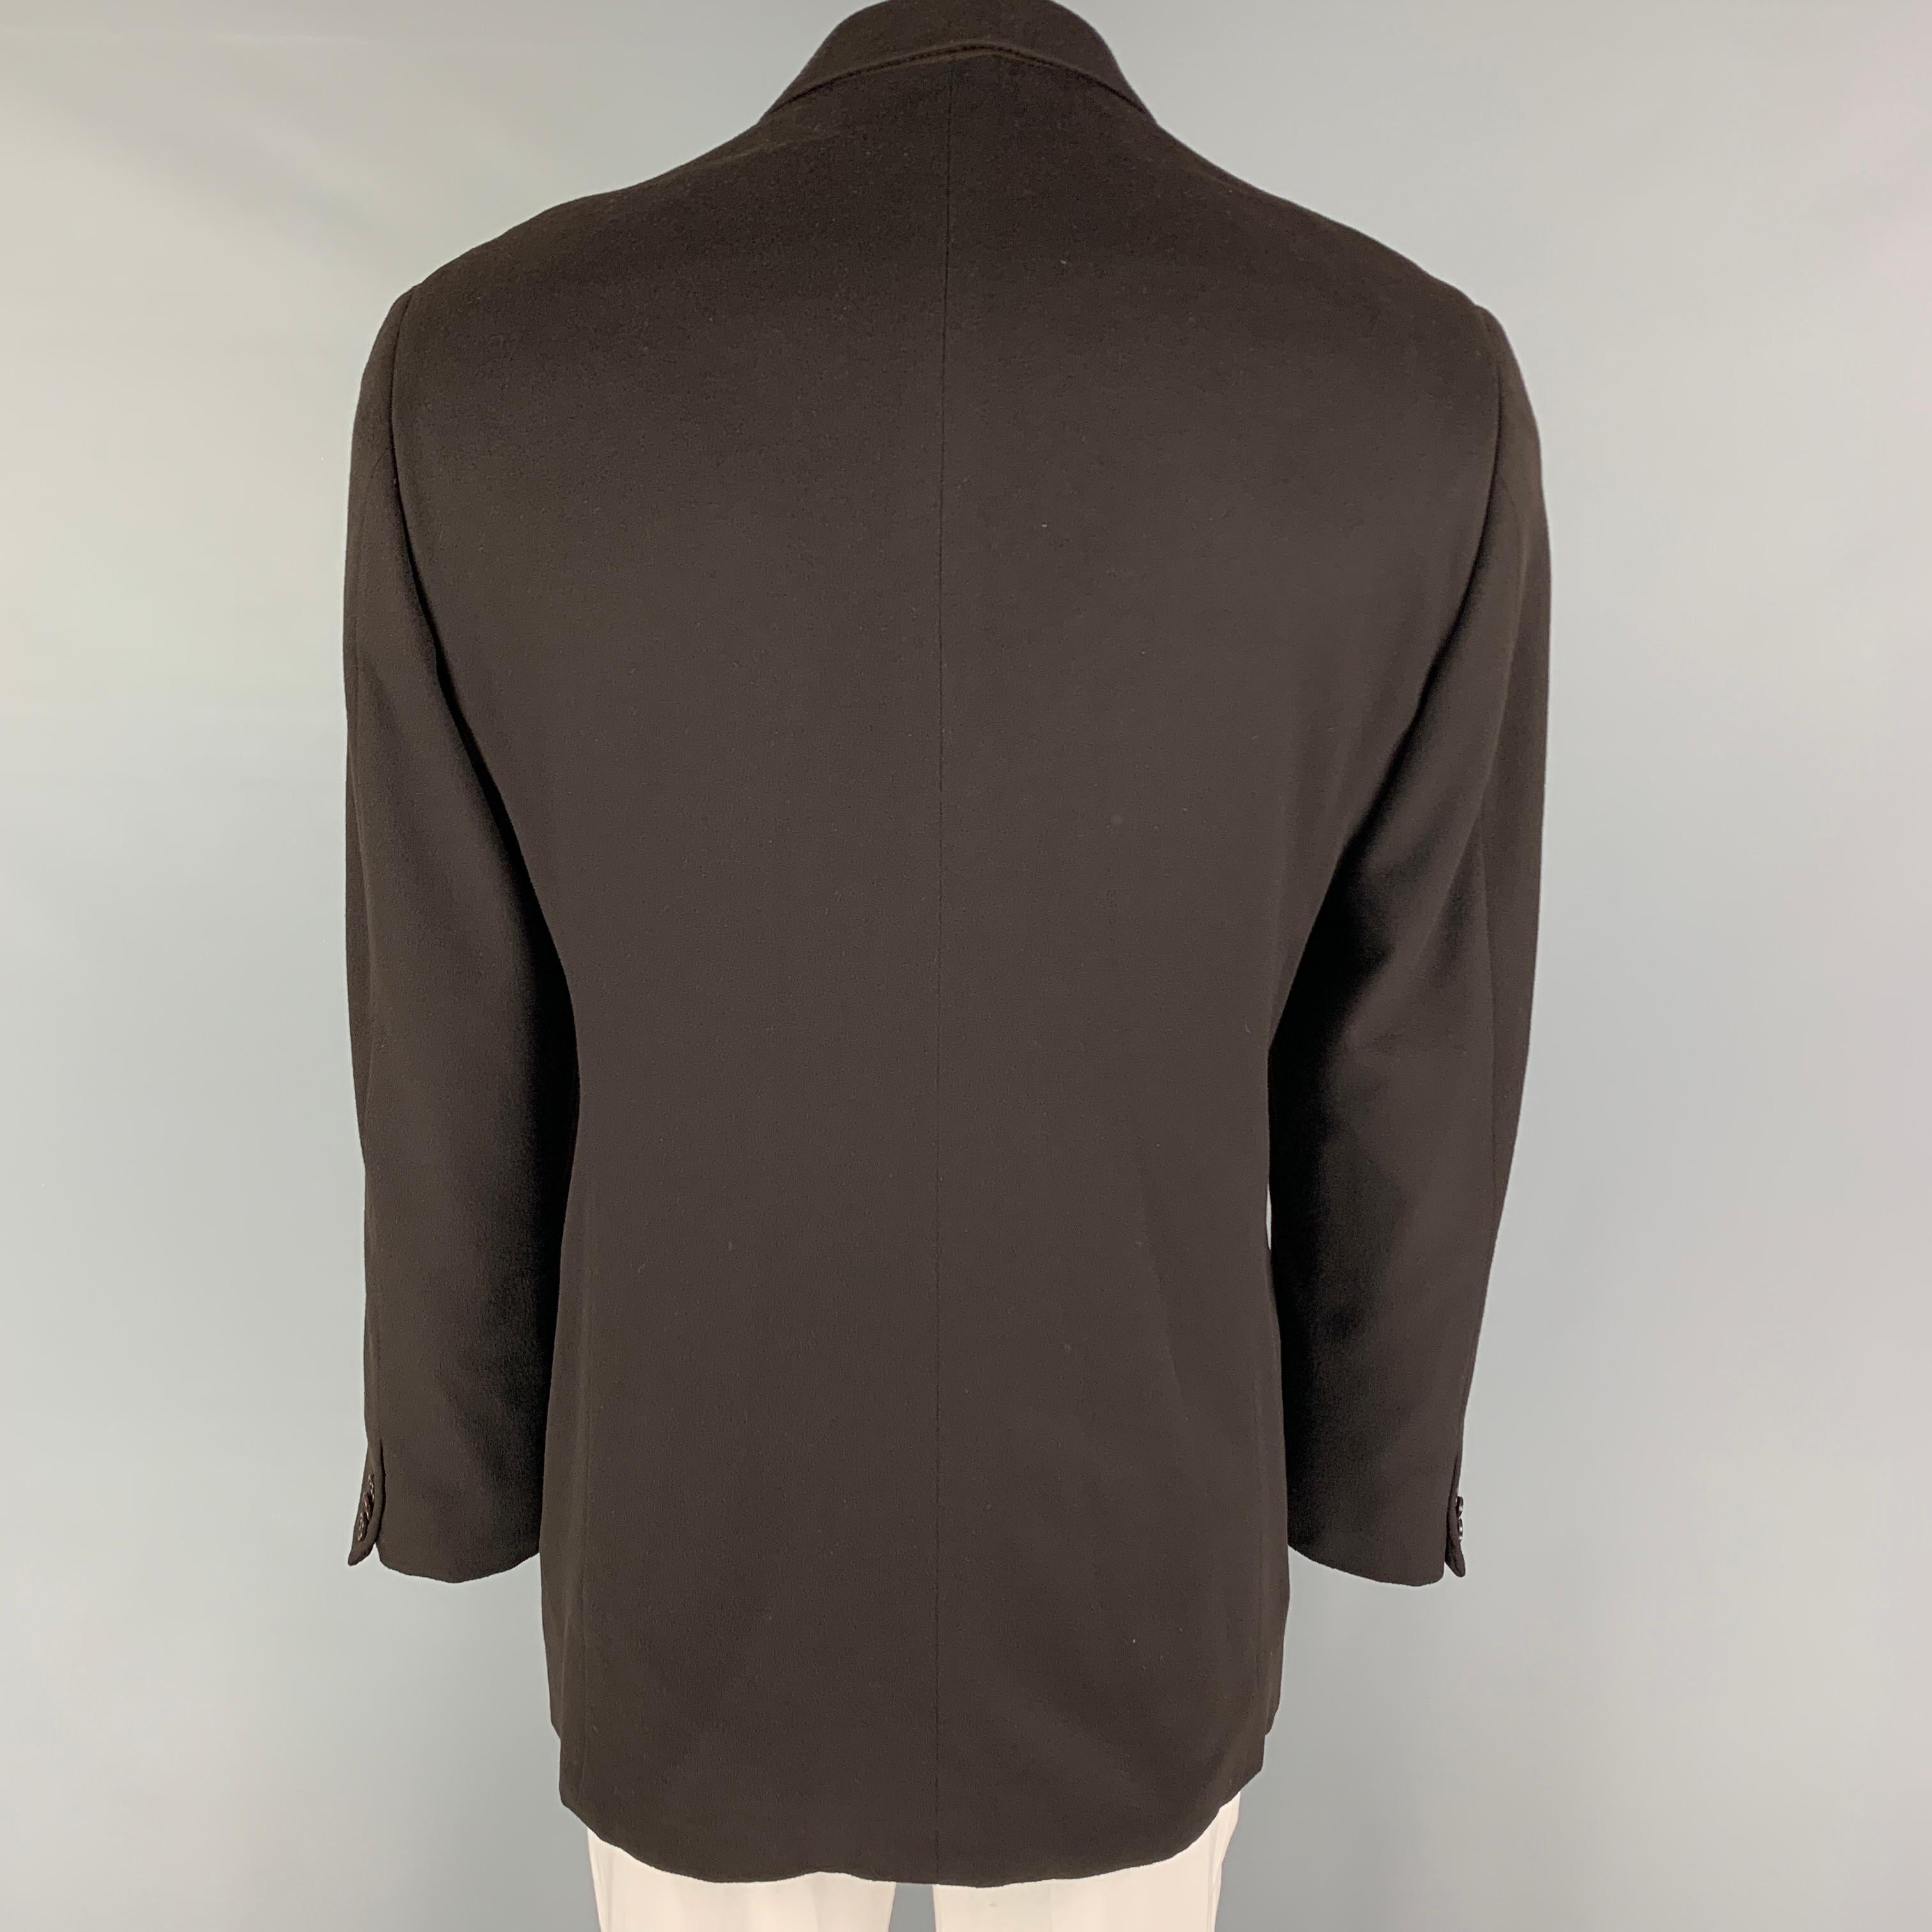 Black ARMANI COLLEZIONI Size 44 Long Brown Cashmere Notch Lapel Sport Coat